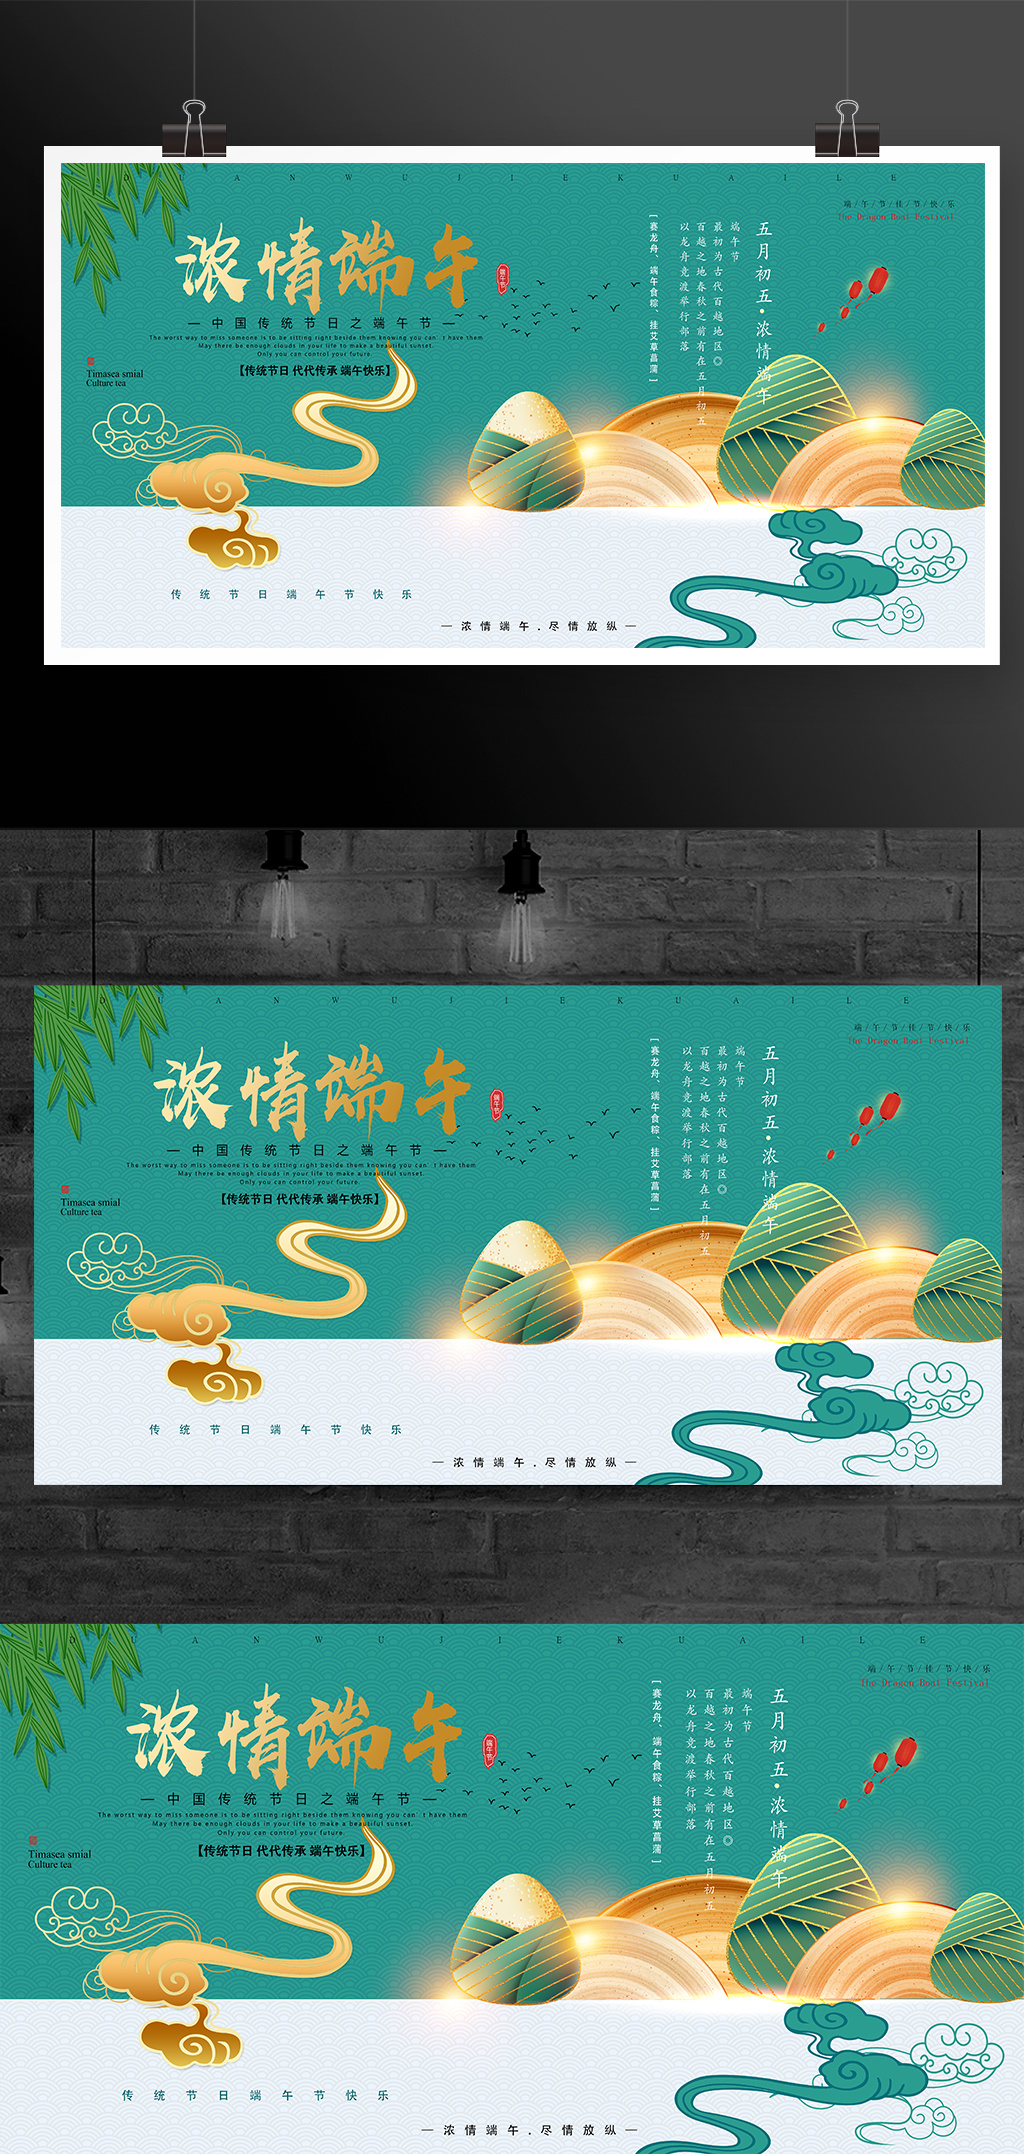 中国传统节日端午节展板模板